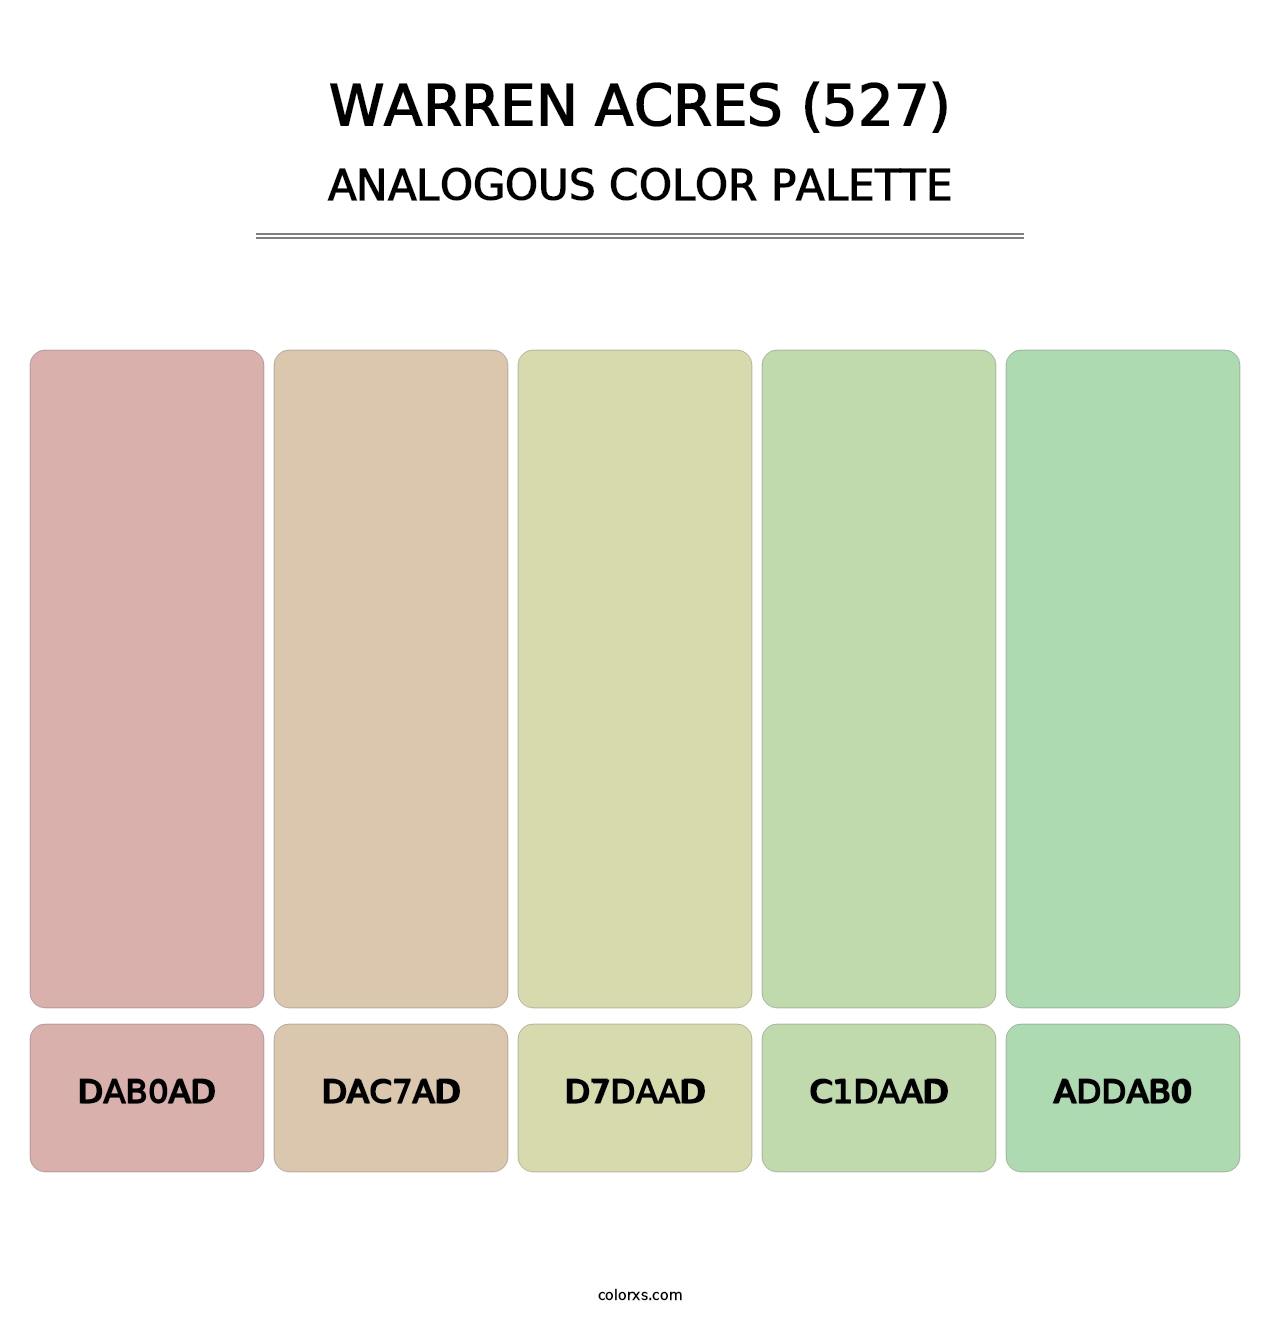 Warren Acres (527) - Analogous Color Palette